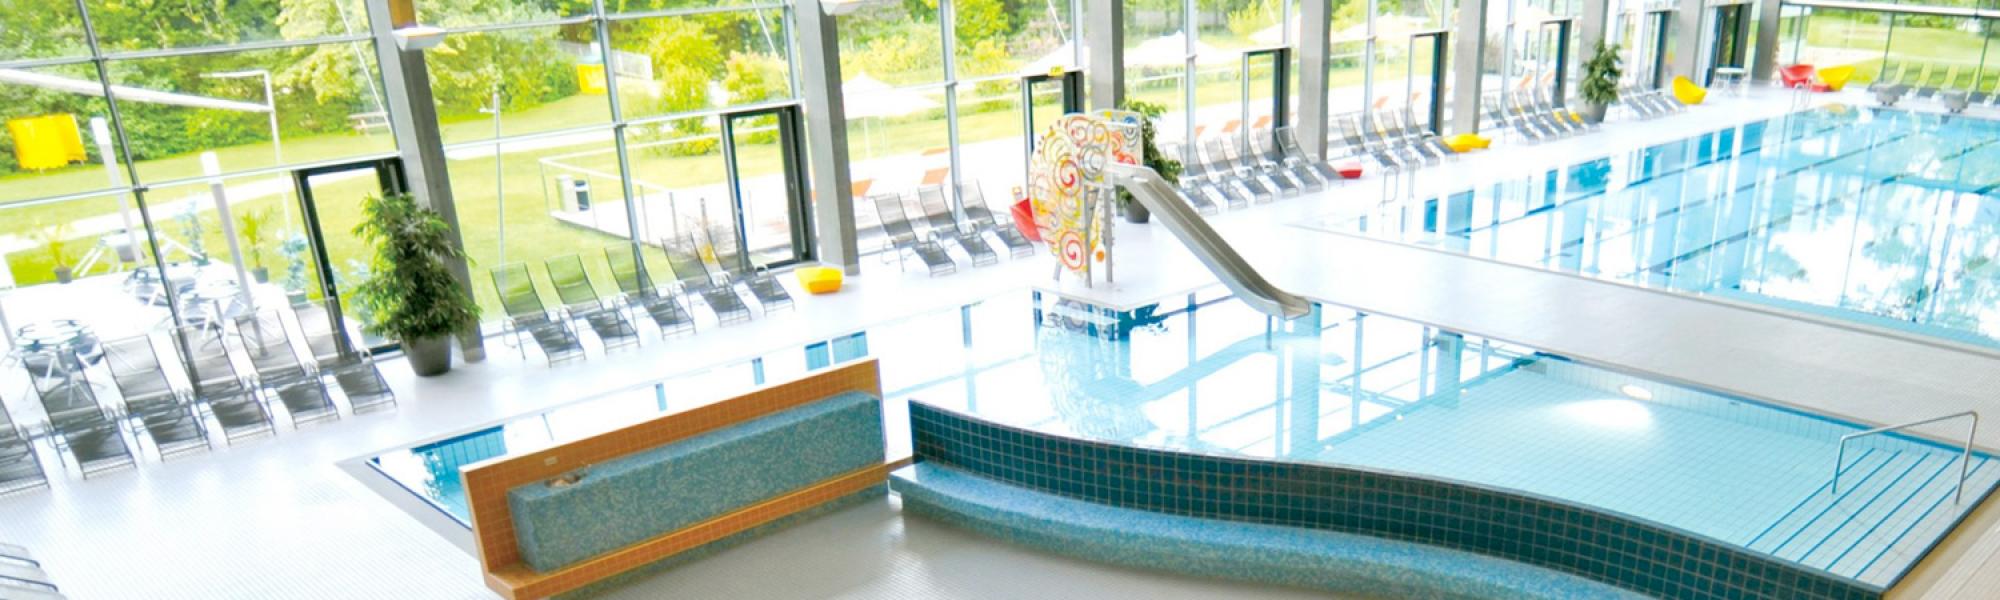 Der Freizeitpark Vöcklabruck bietet mit dem Hallenbad, der Sauna und dem Parkbad ein umfassendes Angebot an Freizeitaktivitäten für die ganze Familie.